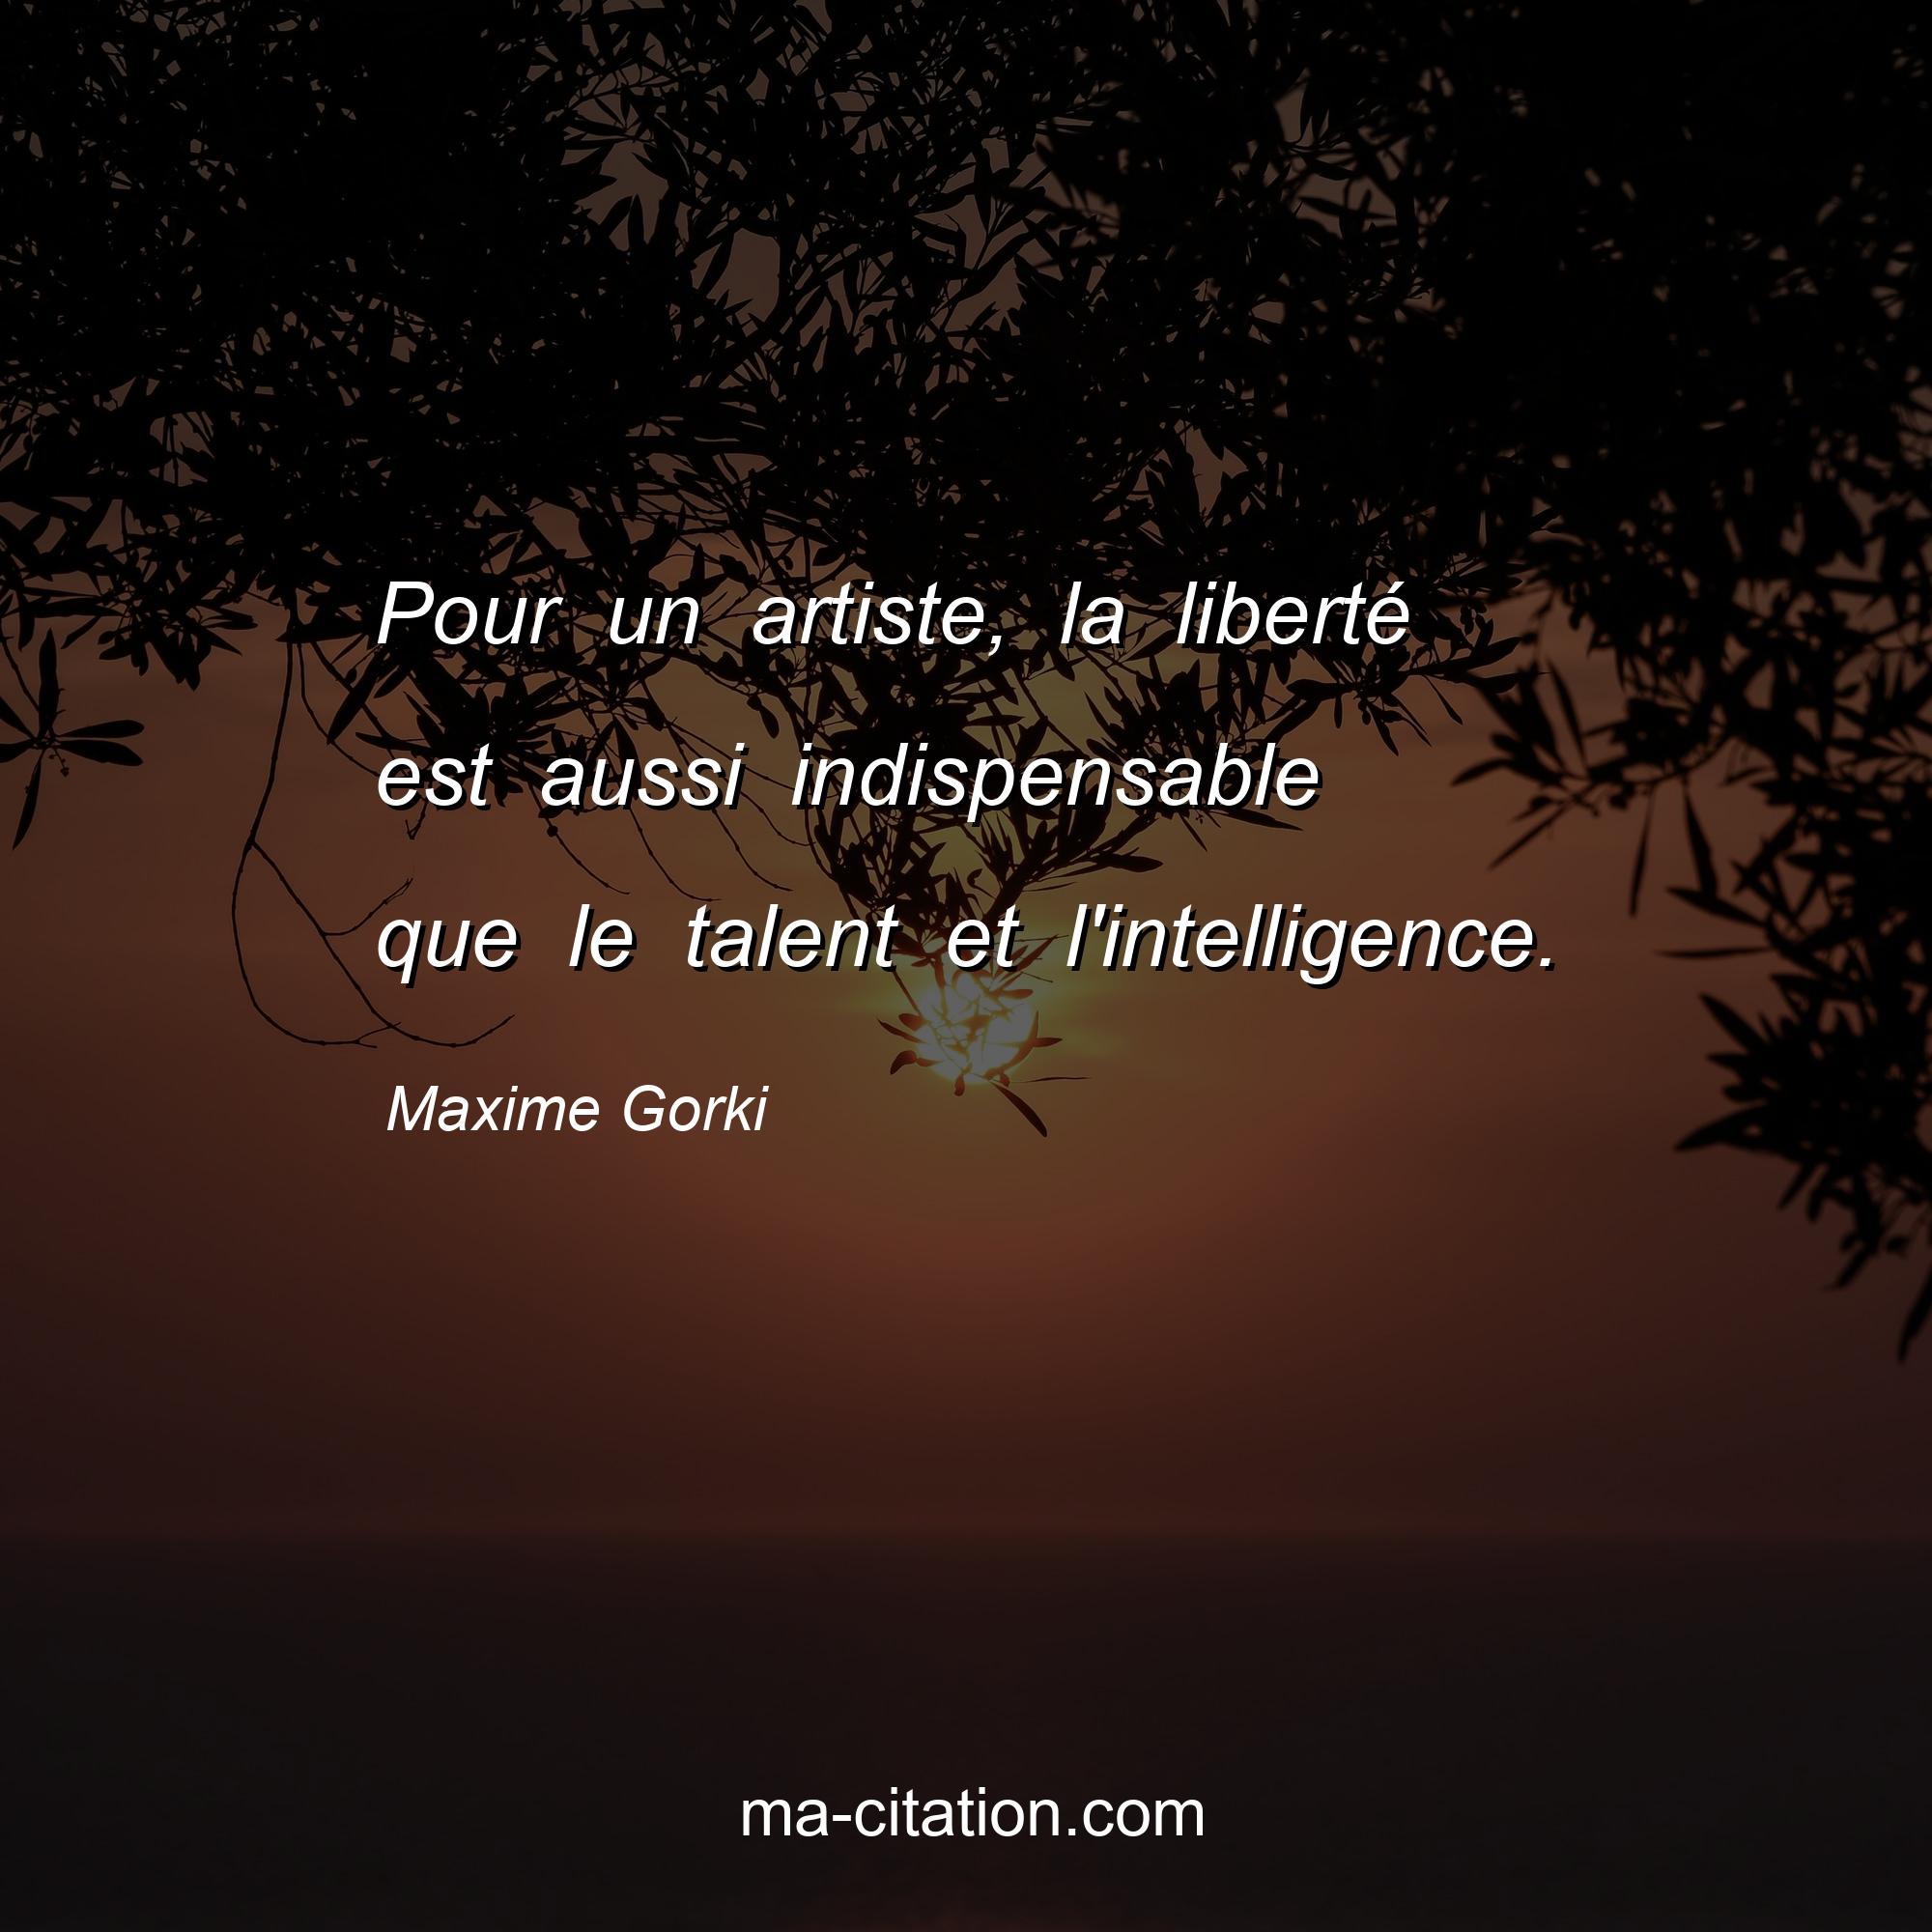 Maxime Gorki : Pour un artiste, la liberté est aussi indispensable que le talent et l'intelligence.